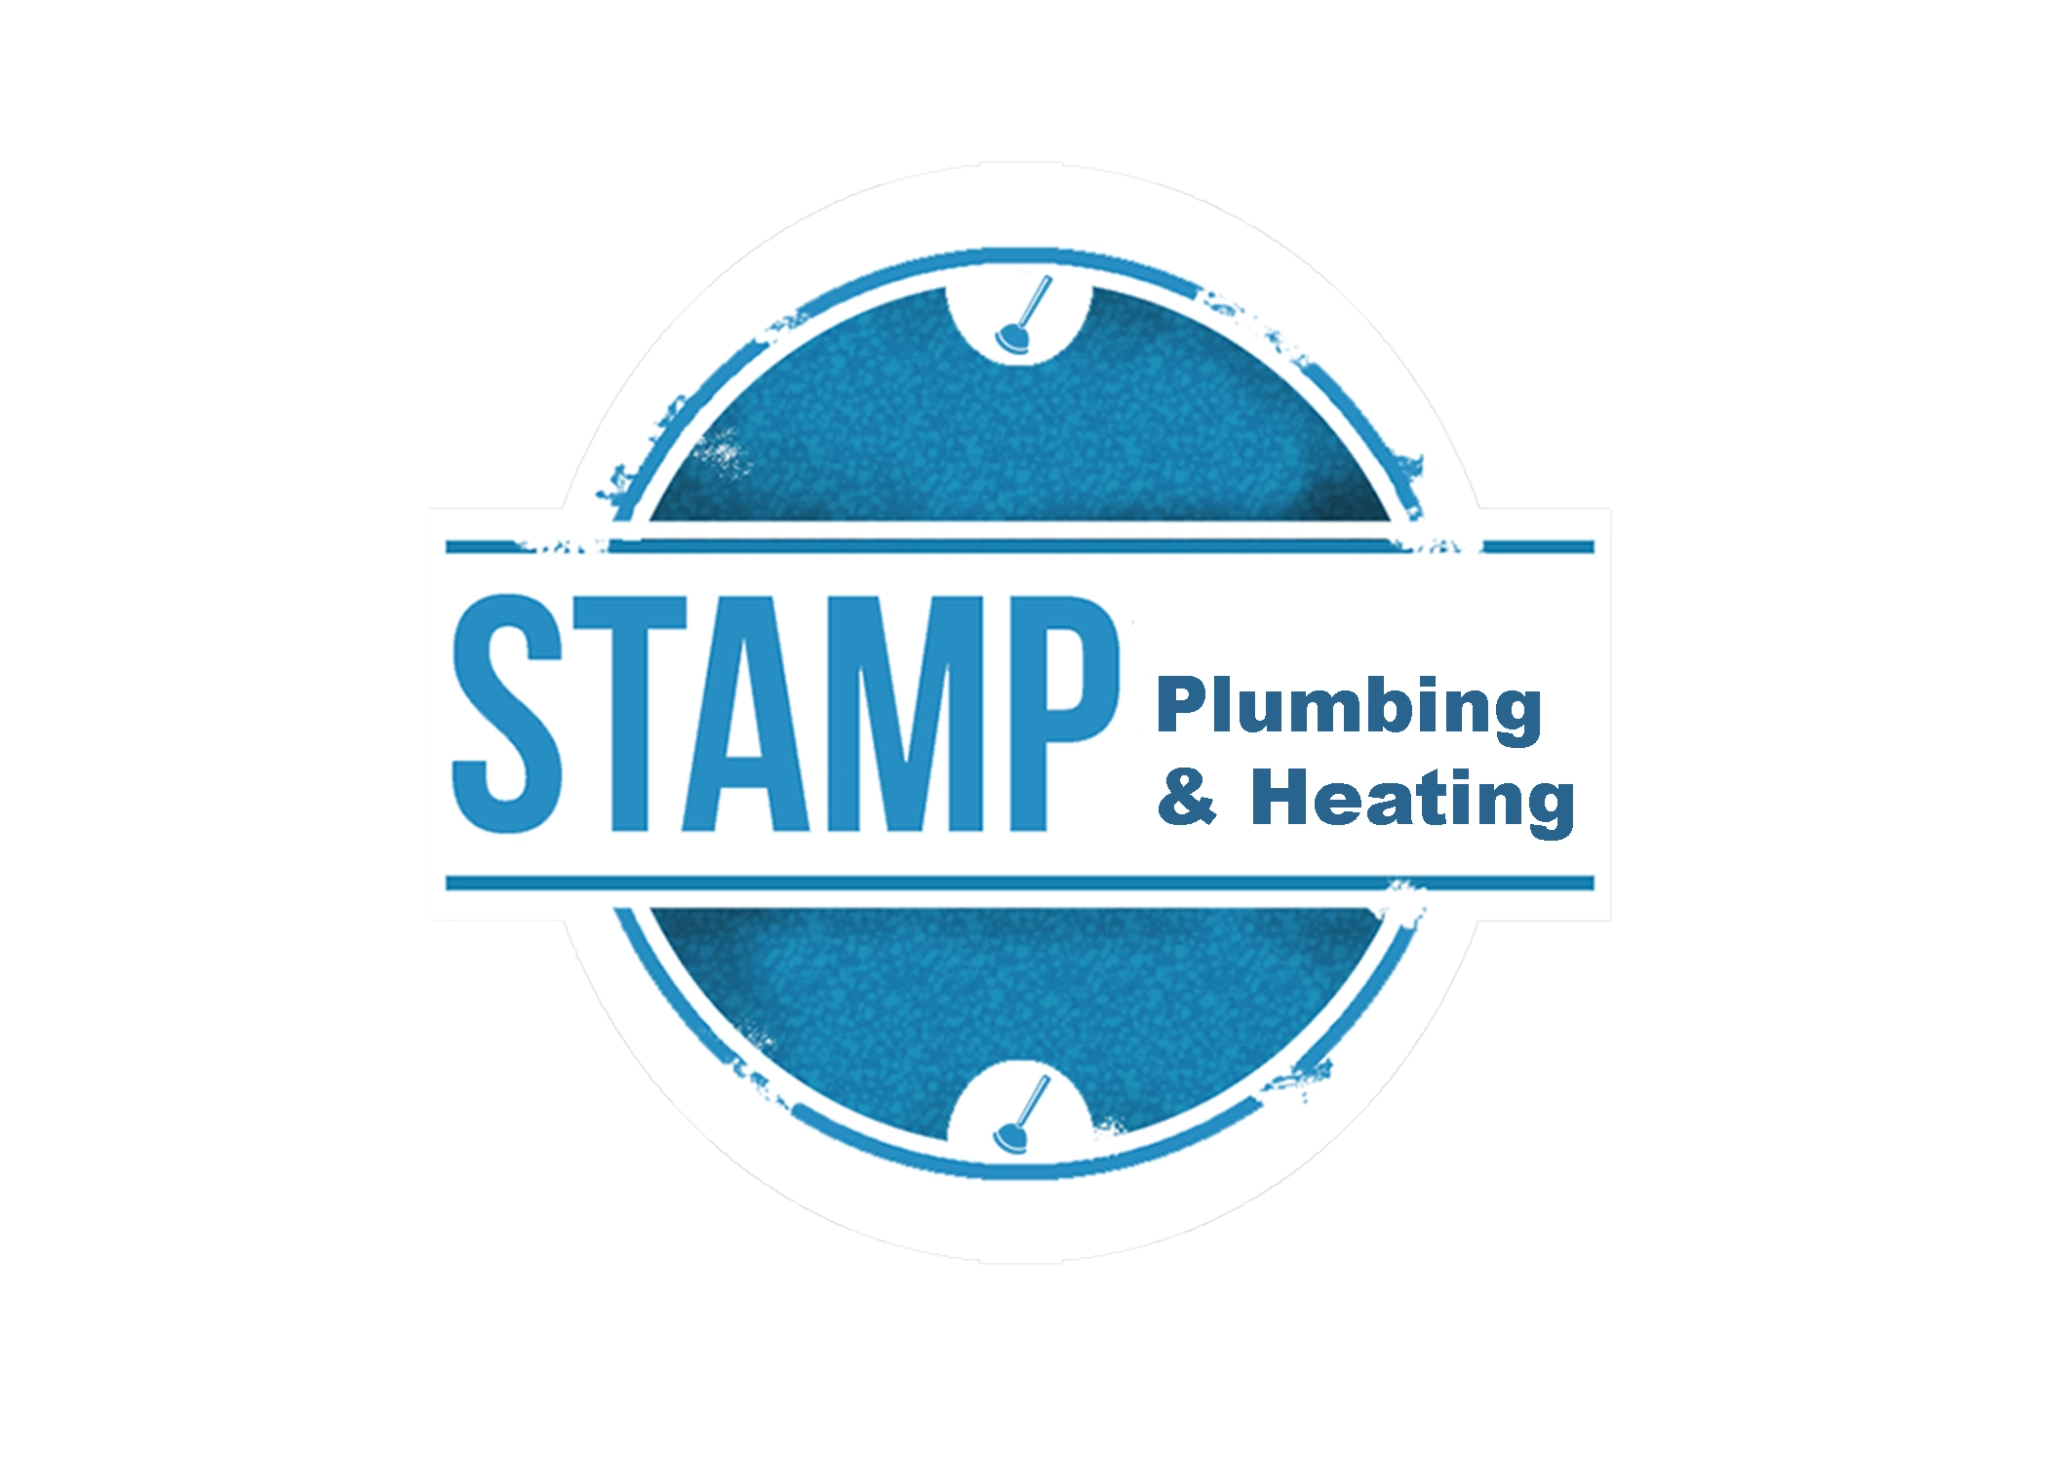 Stamp Plumbing & Heating LLC Logo